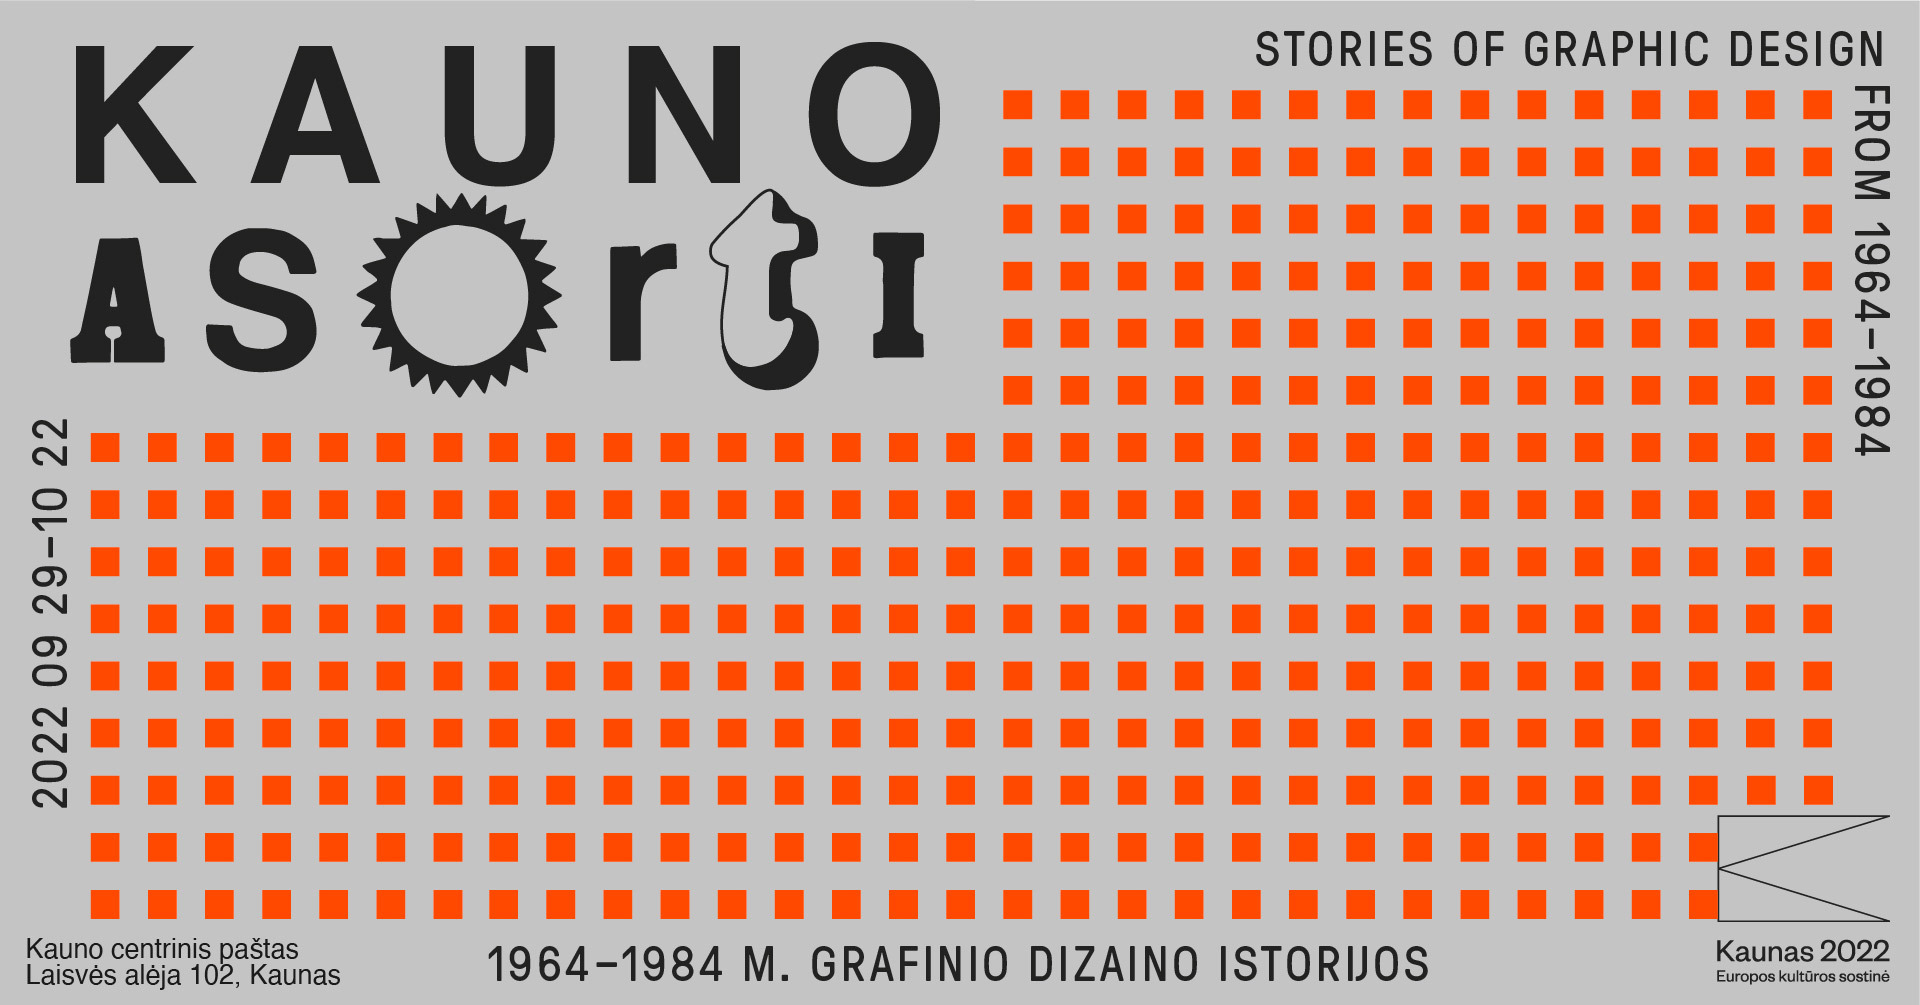 Kauno Asorti: 1964 - 1984 m. grafinio dizaino istorijos